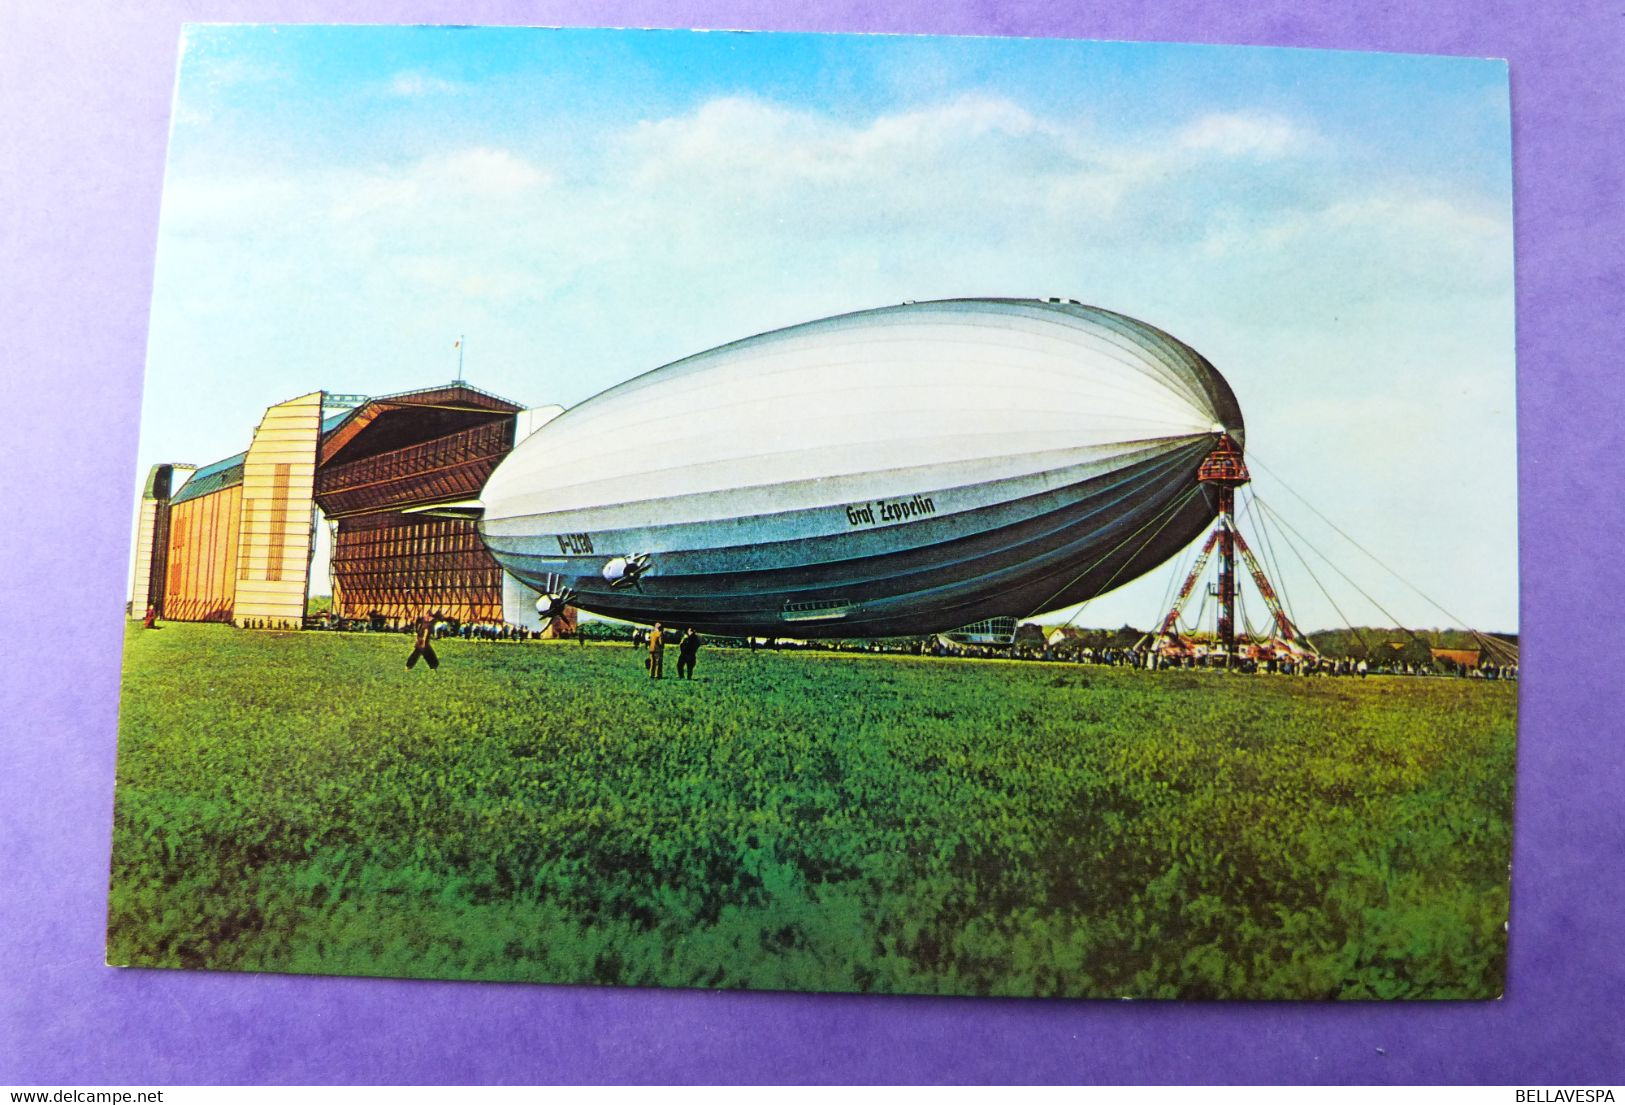 Zeppelin Friedrichshafen Luftschiff  Hindenburg Lot x 17 cpsm & 10 x thema stamps